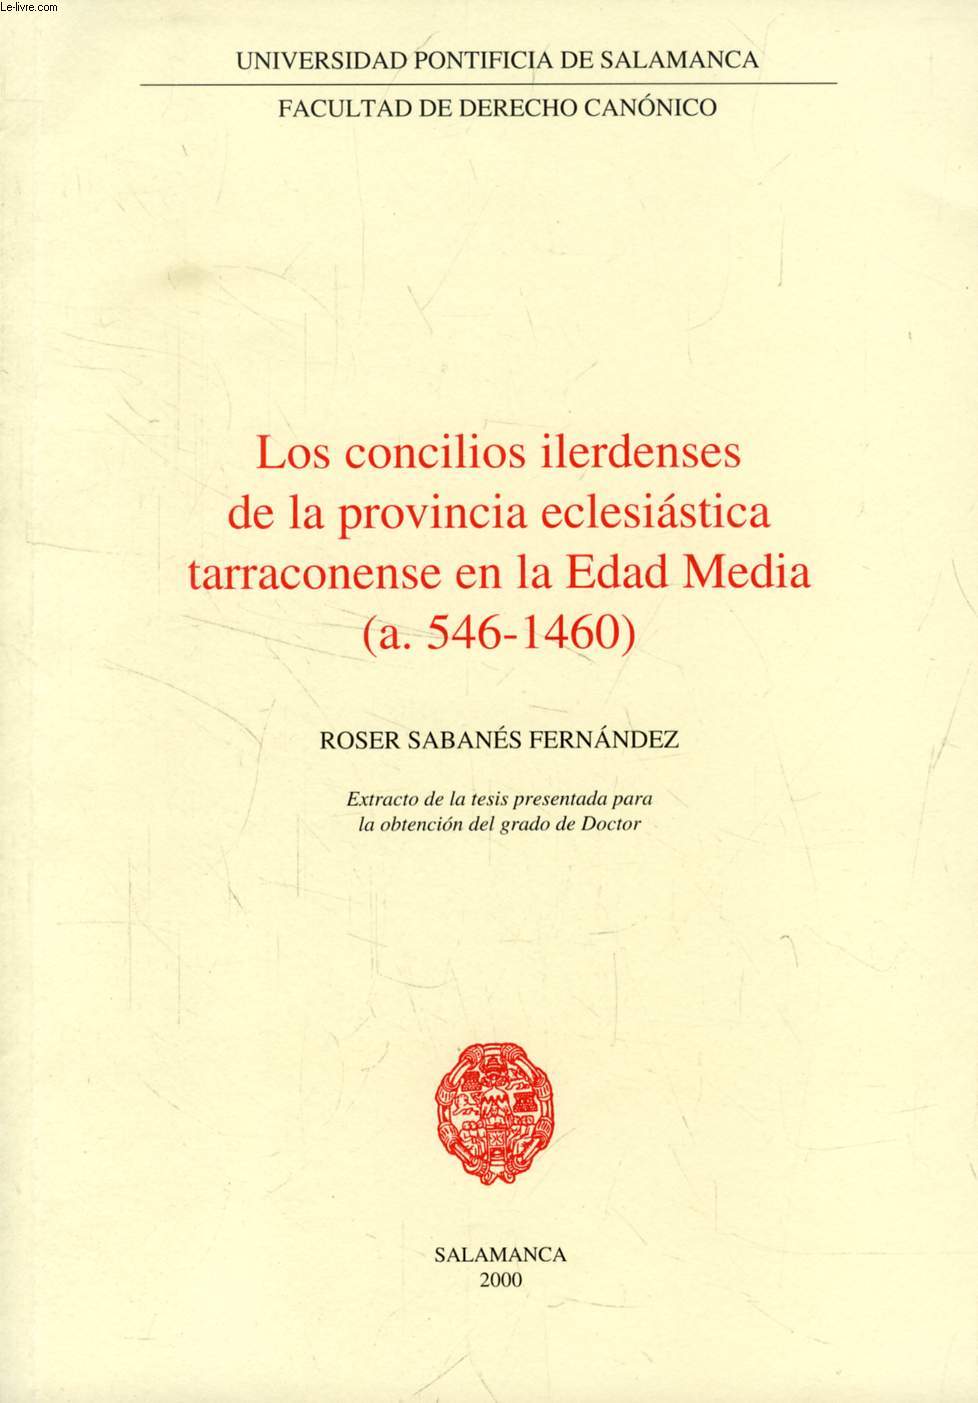 LOS CONCILIOS ILERDENSES DE LA PROVINCIA ECLESIASTICA TARRACONENSE EN LA EDAD MEDIA (a. 546-1460) (EXTRACTO DE LA TESIS)